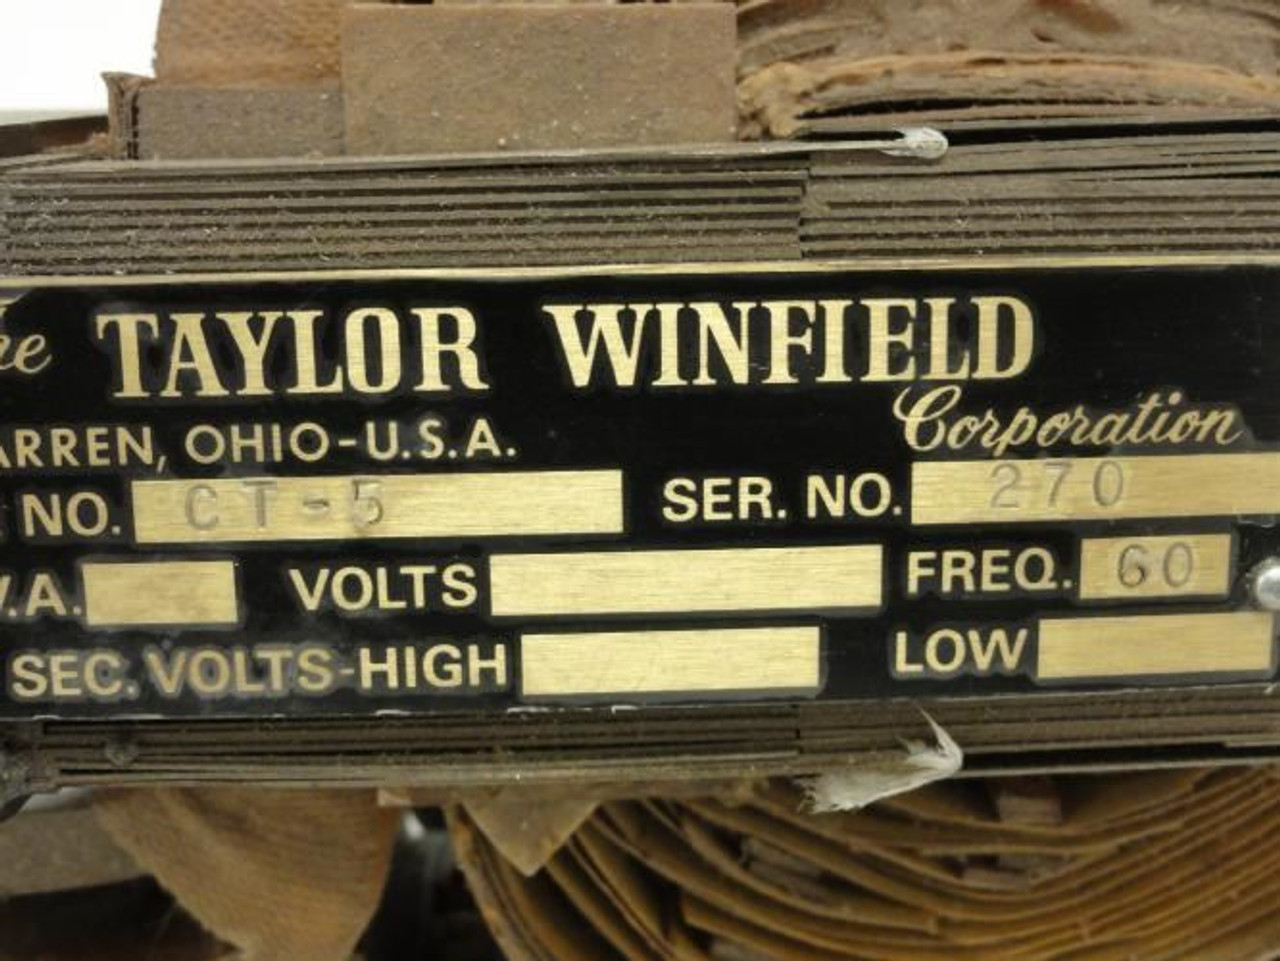 Taylor Winfield U-13935; Transformer; CT-5